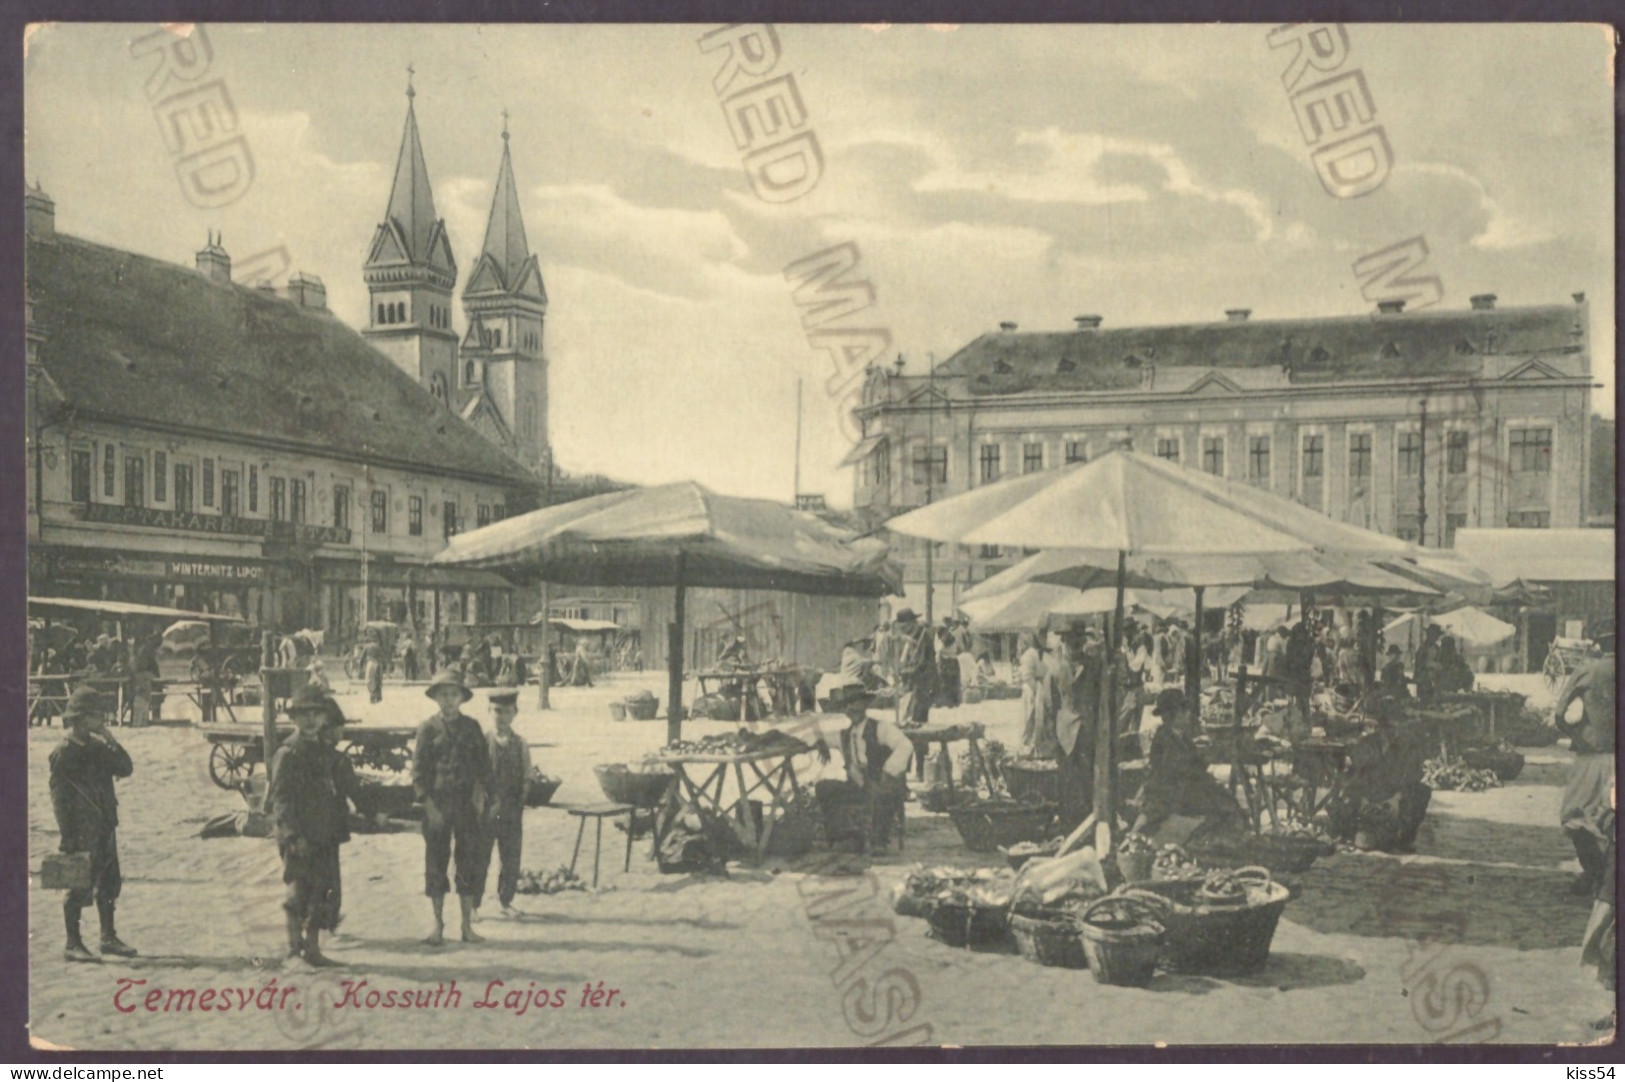 RO 69 - 24944 TIMISOARA, Market, Romania - Old Postcard - Unused - Romania